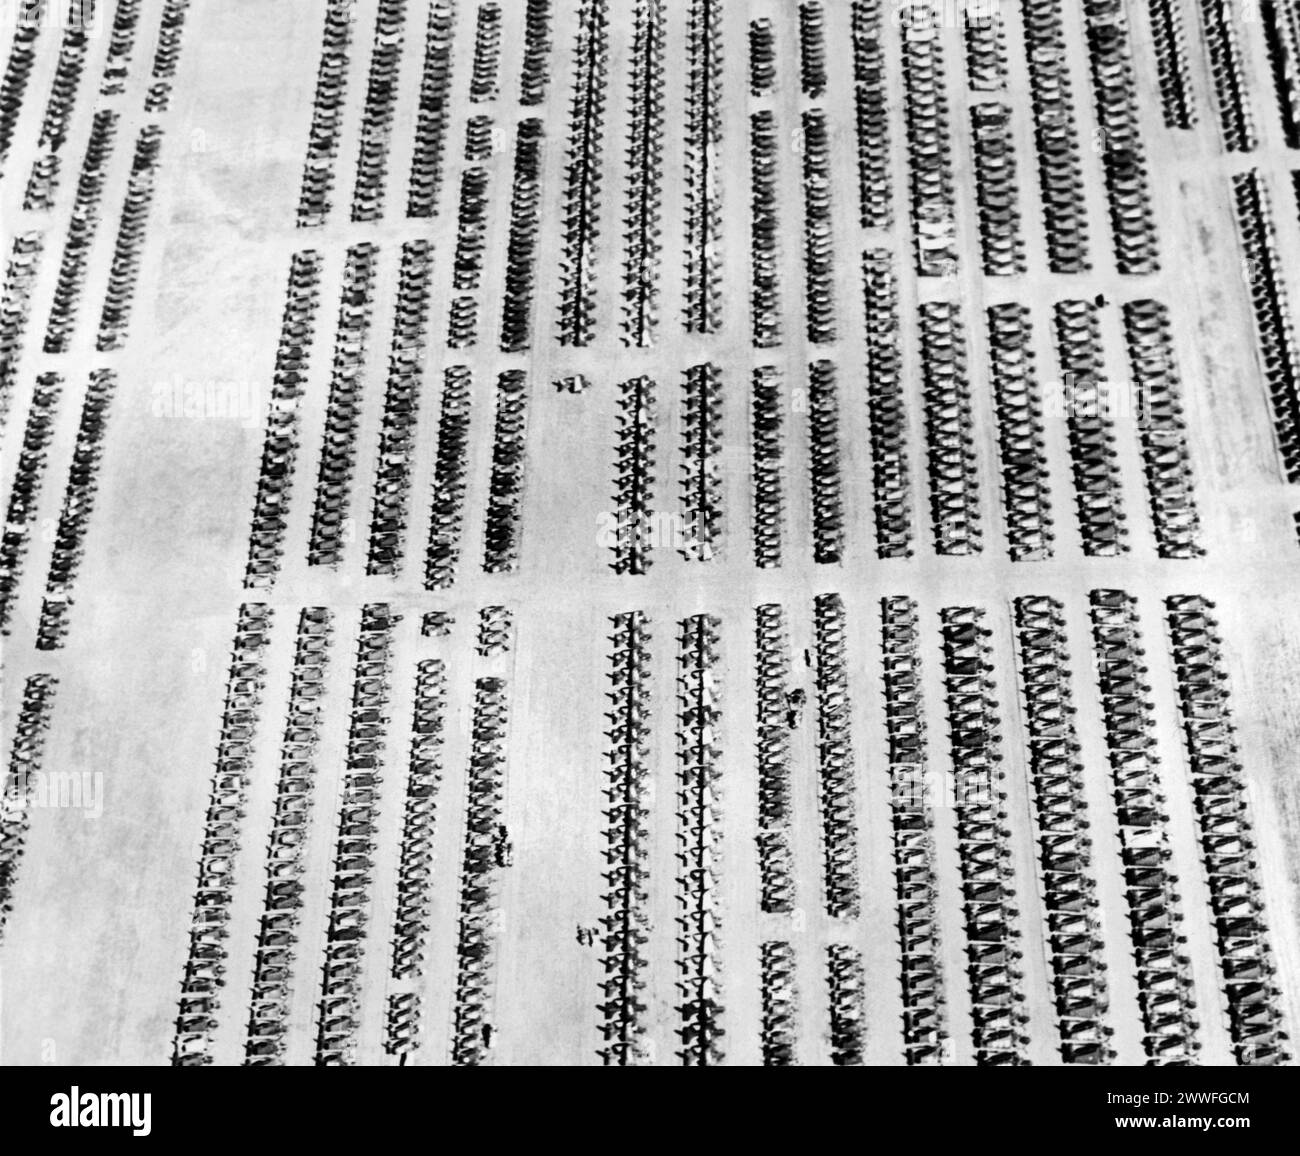 Quinton, Oklahoma, 25 maggio 1946 questa è una vista aerea di una piccola parte delle migliaia di aerei della Marina in eccedenza schierati presso la Naval Air Station di Clinton, in Florida., le cui parti vengono ora reimmesse in canali commerciali per diventare telai di finestre, spogliamento di linoleum, infissi e leghe ornamentali per l'industria siderurgica o chimica mediante un programma di smaltimento dei rottami di alluminio di aeromobili in eccedenza istituito dal dipartimento della marina militare. Foto Stock